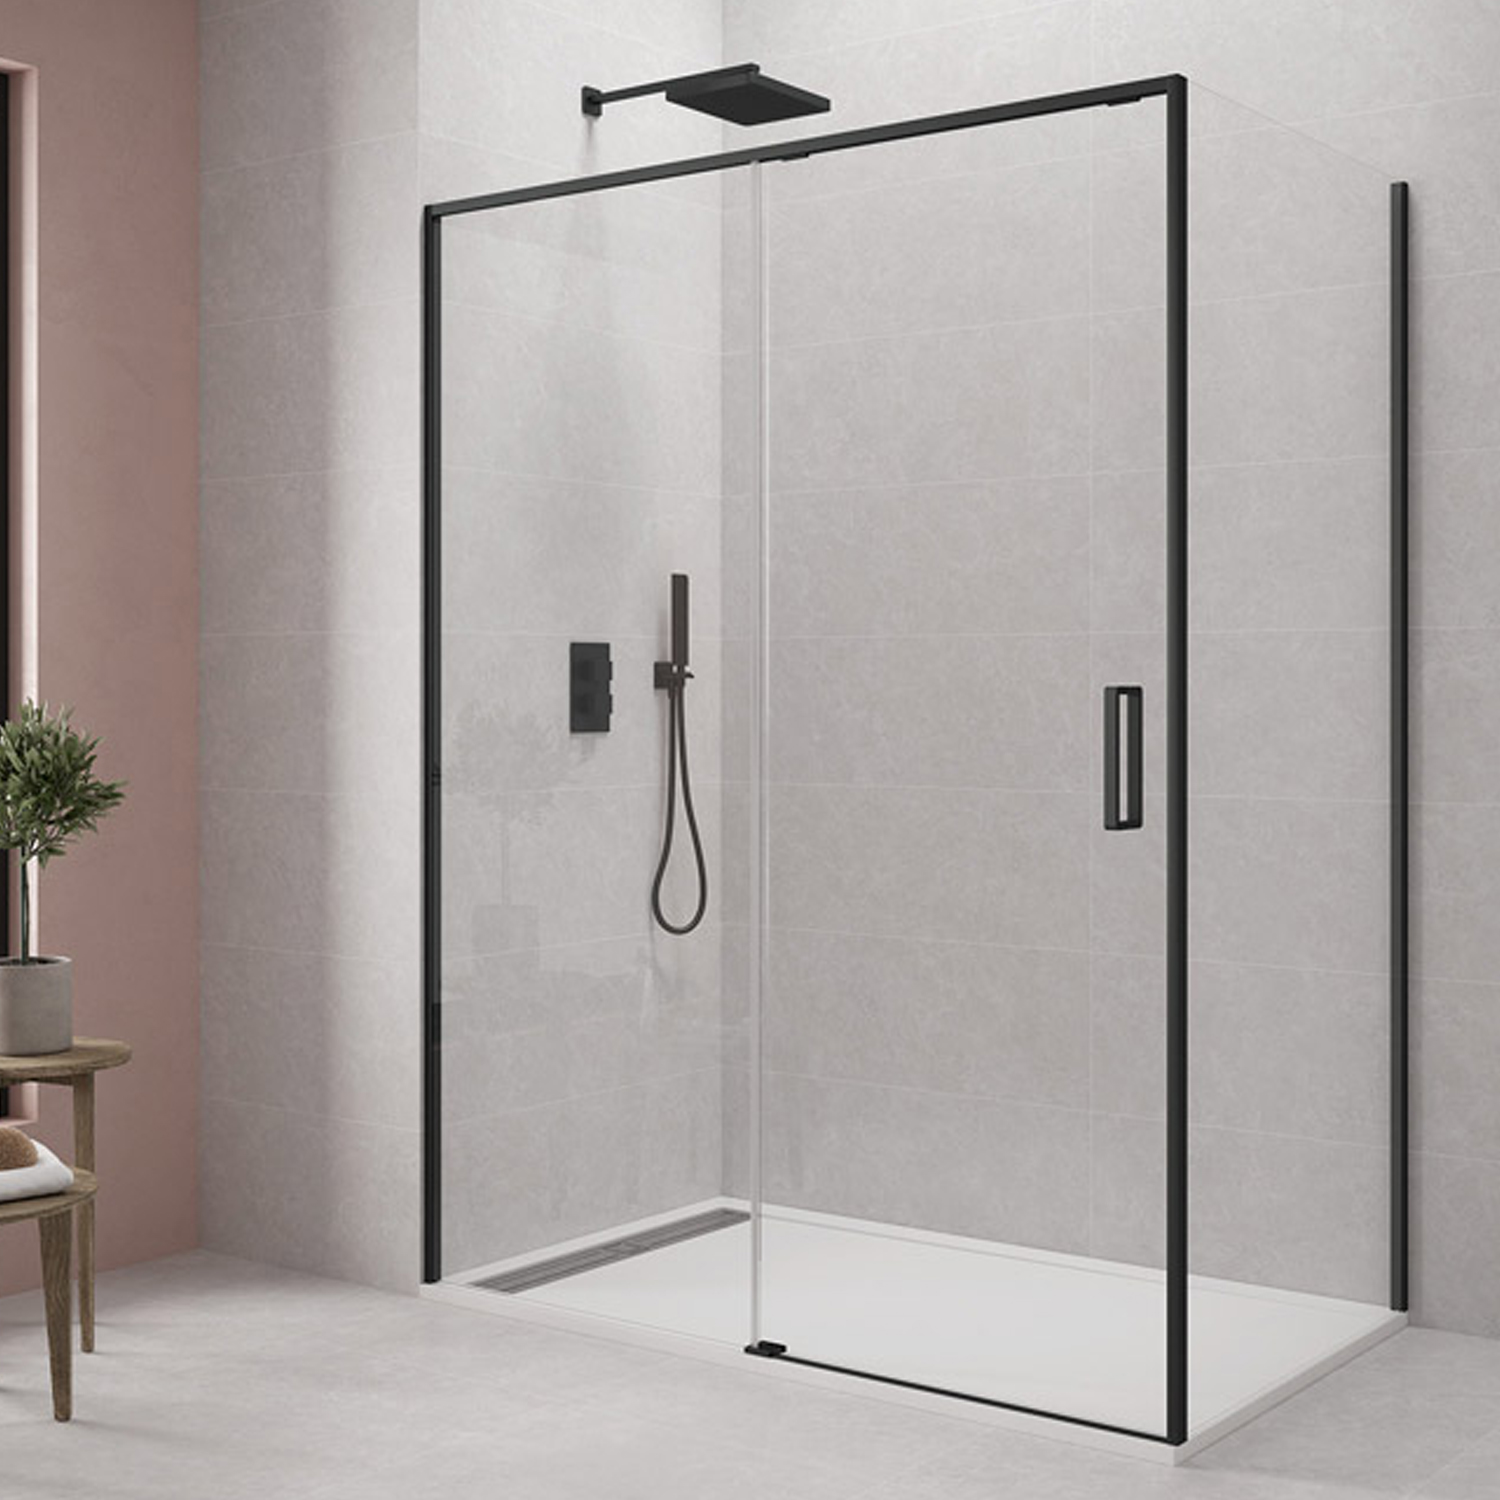 Alfombrilla de baño rectangular  Adecuada para bañera o ducha